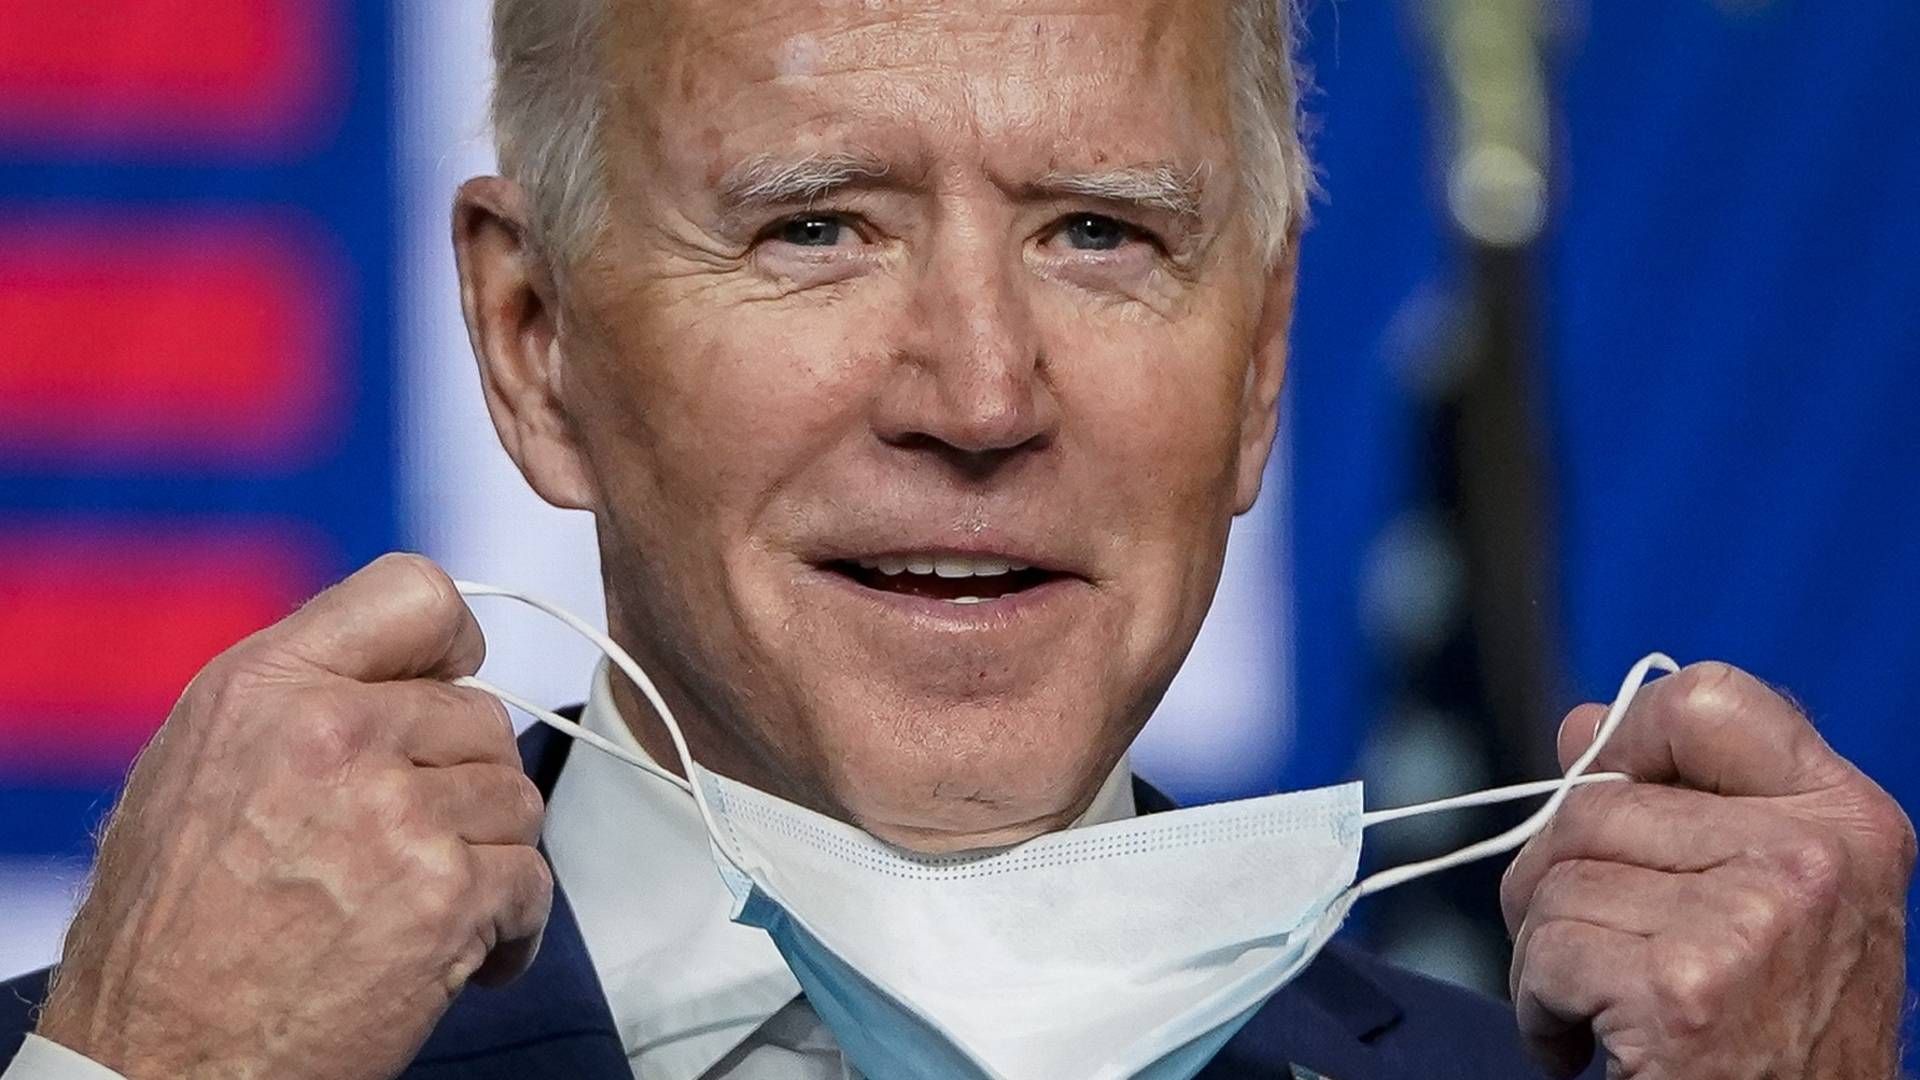 Demokraternes præsidentkandidat Joe Biden har vundet præsidentvalget i svingstaten Michigan, rapporterer flere medier. | Foto: DREW ANGERER/AFP / GETTY IMAGES NORTH AMERICA/Ritzau Scanpix